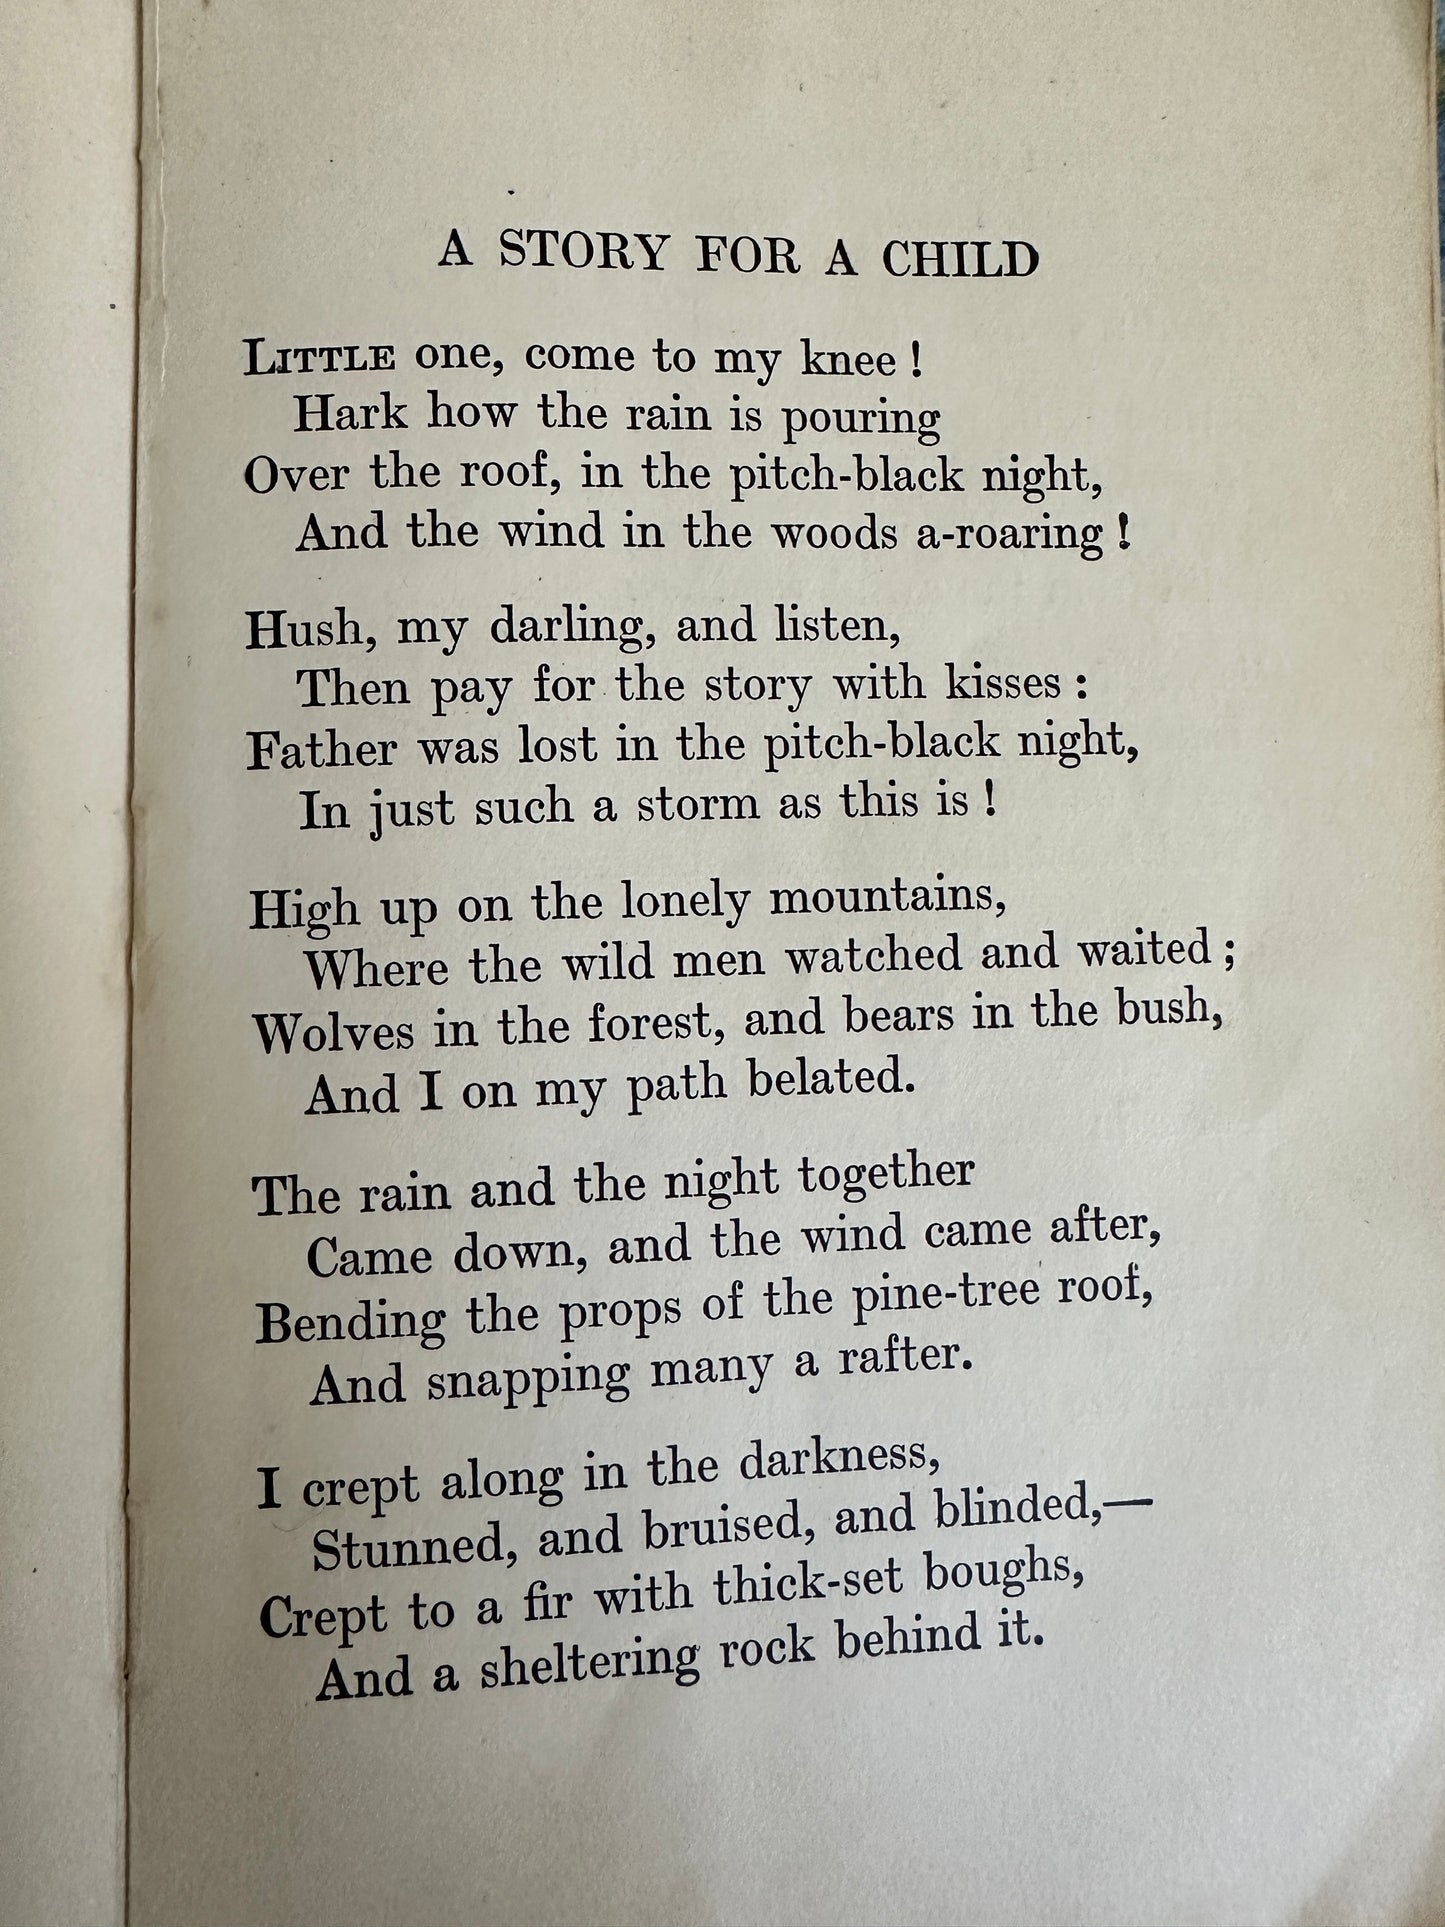 1921 Tales In Rhyme - V. H. Collins(Humphrey Milford Pub)